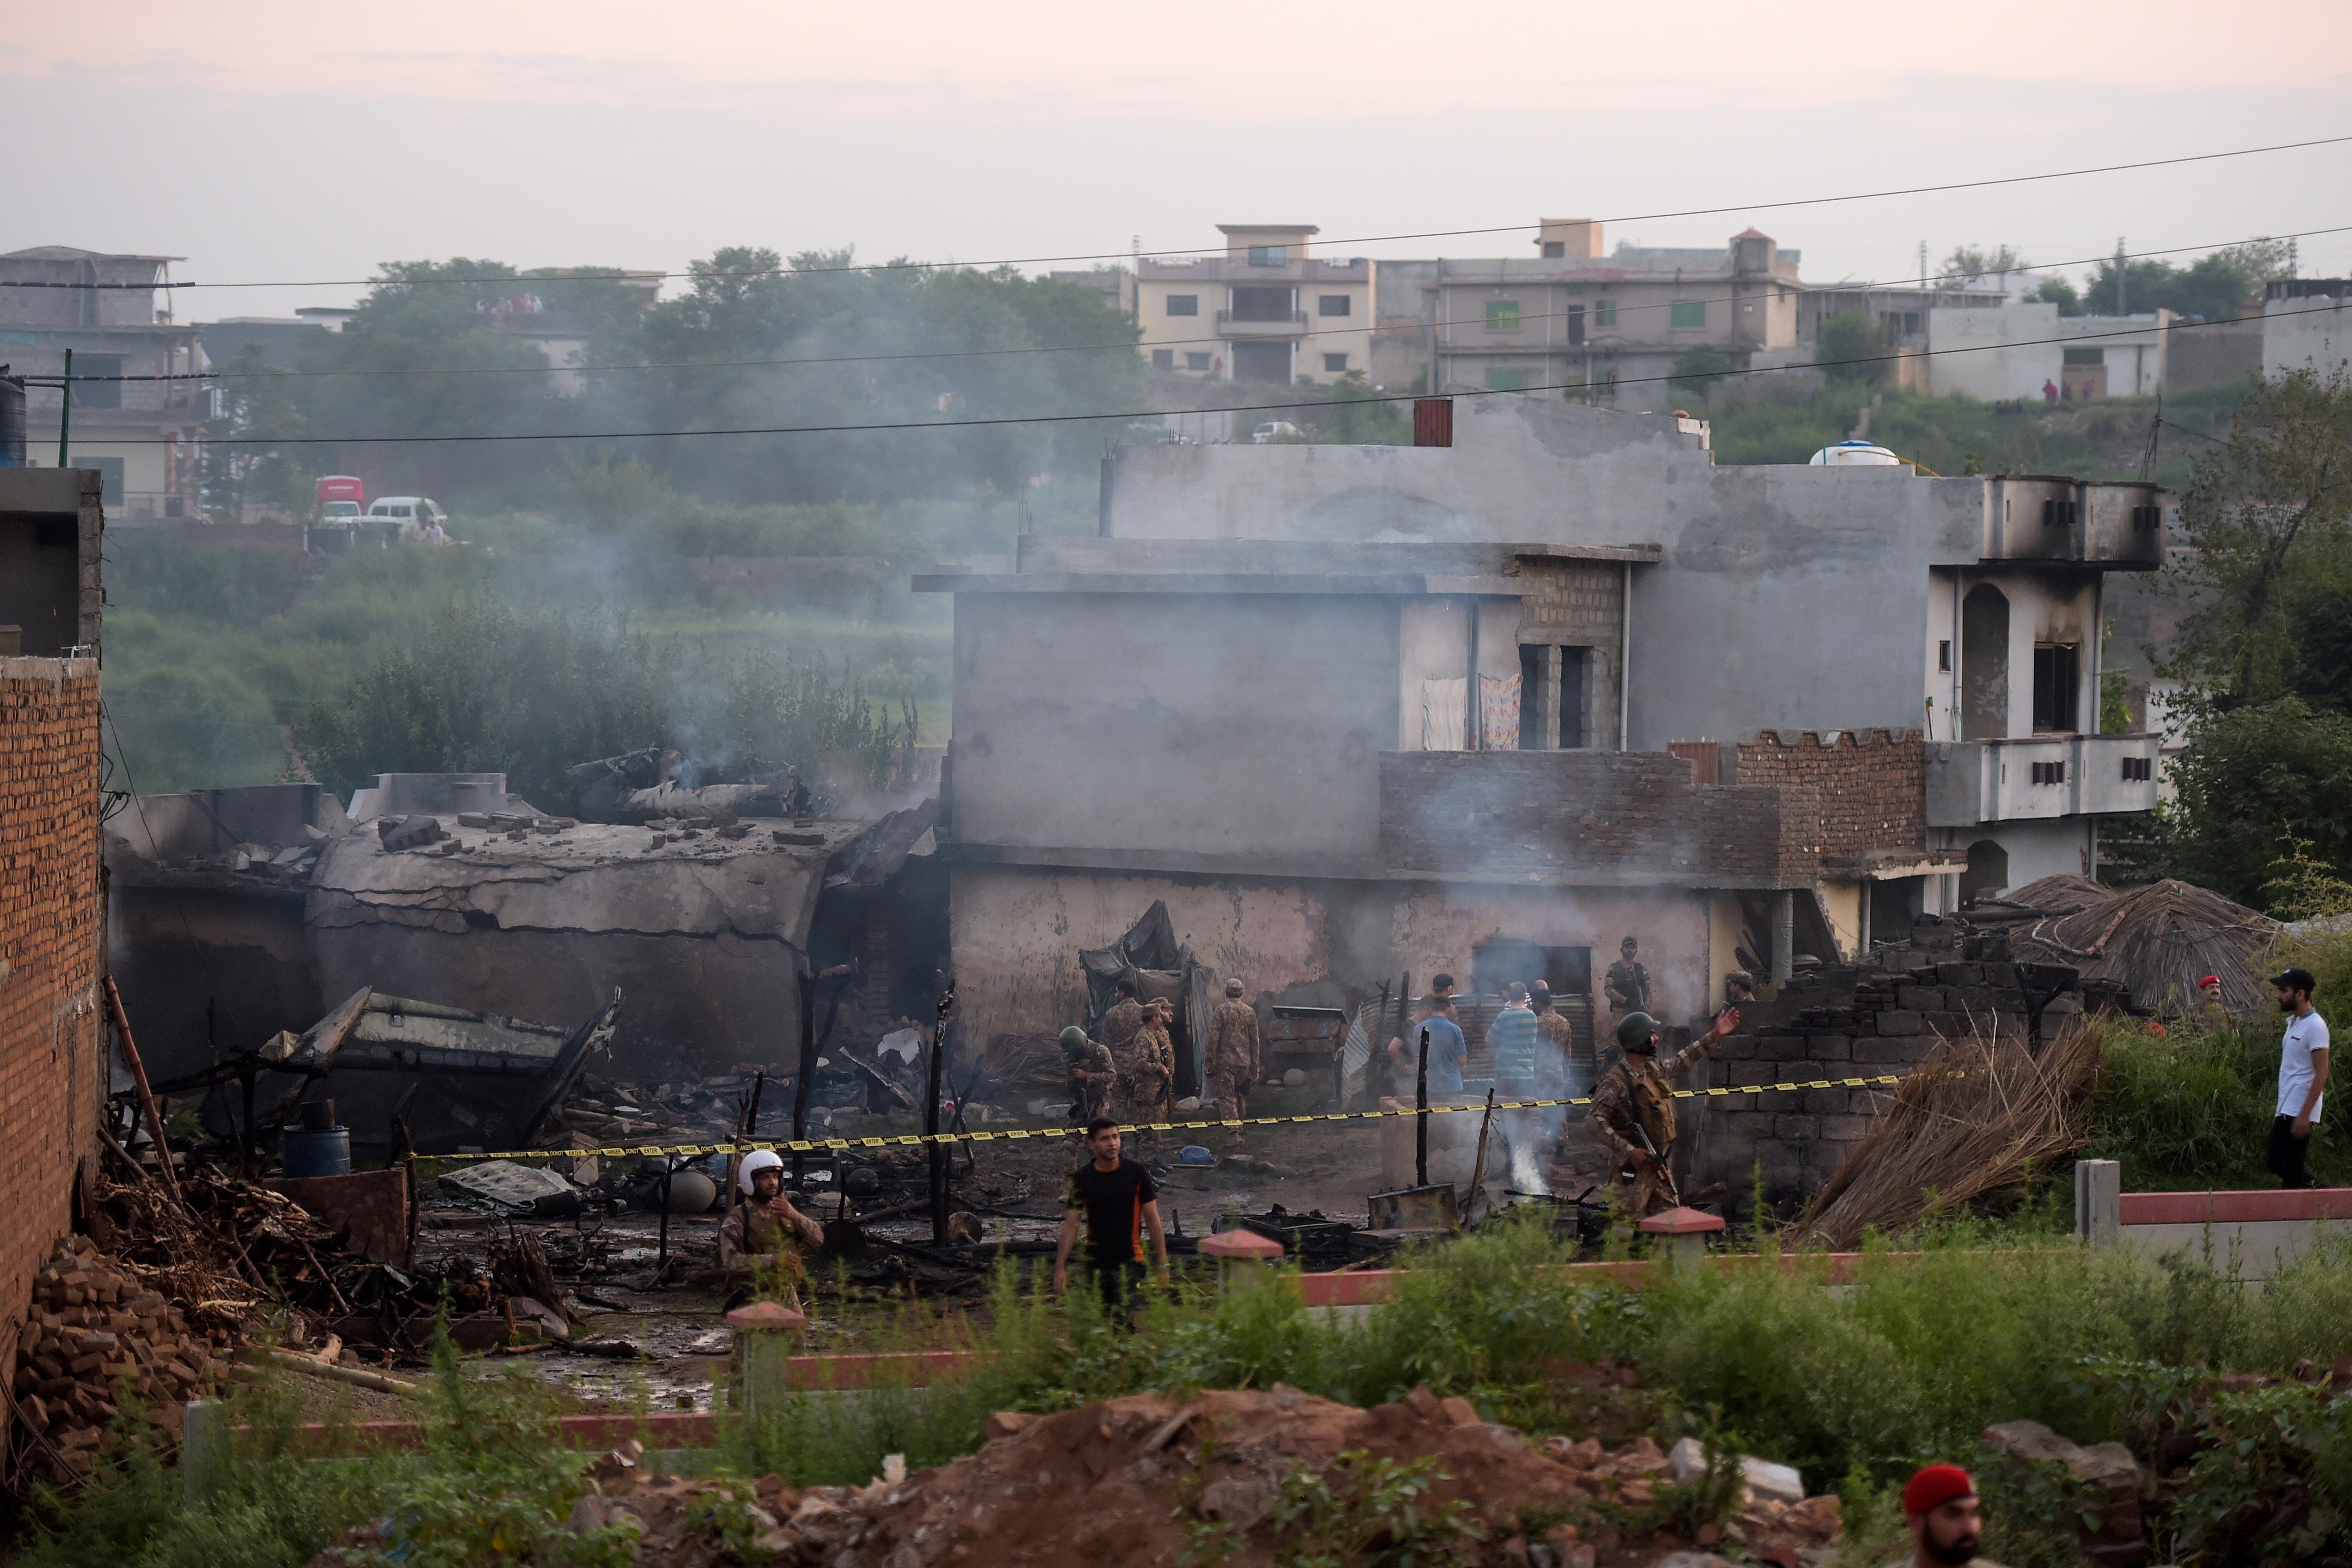 Mueren 18 personas al caer un avión militar en área residencial de Pakistán (Fotos)